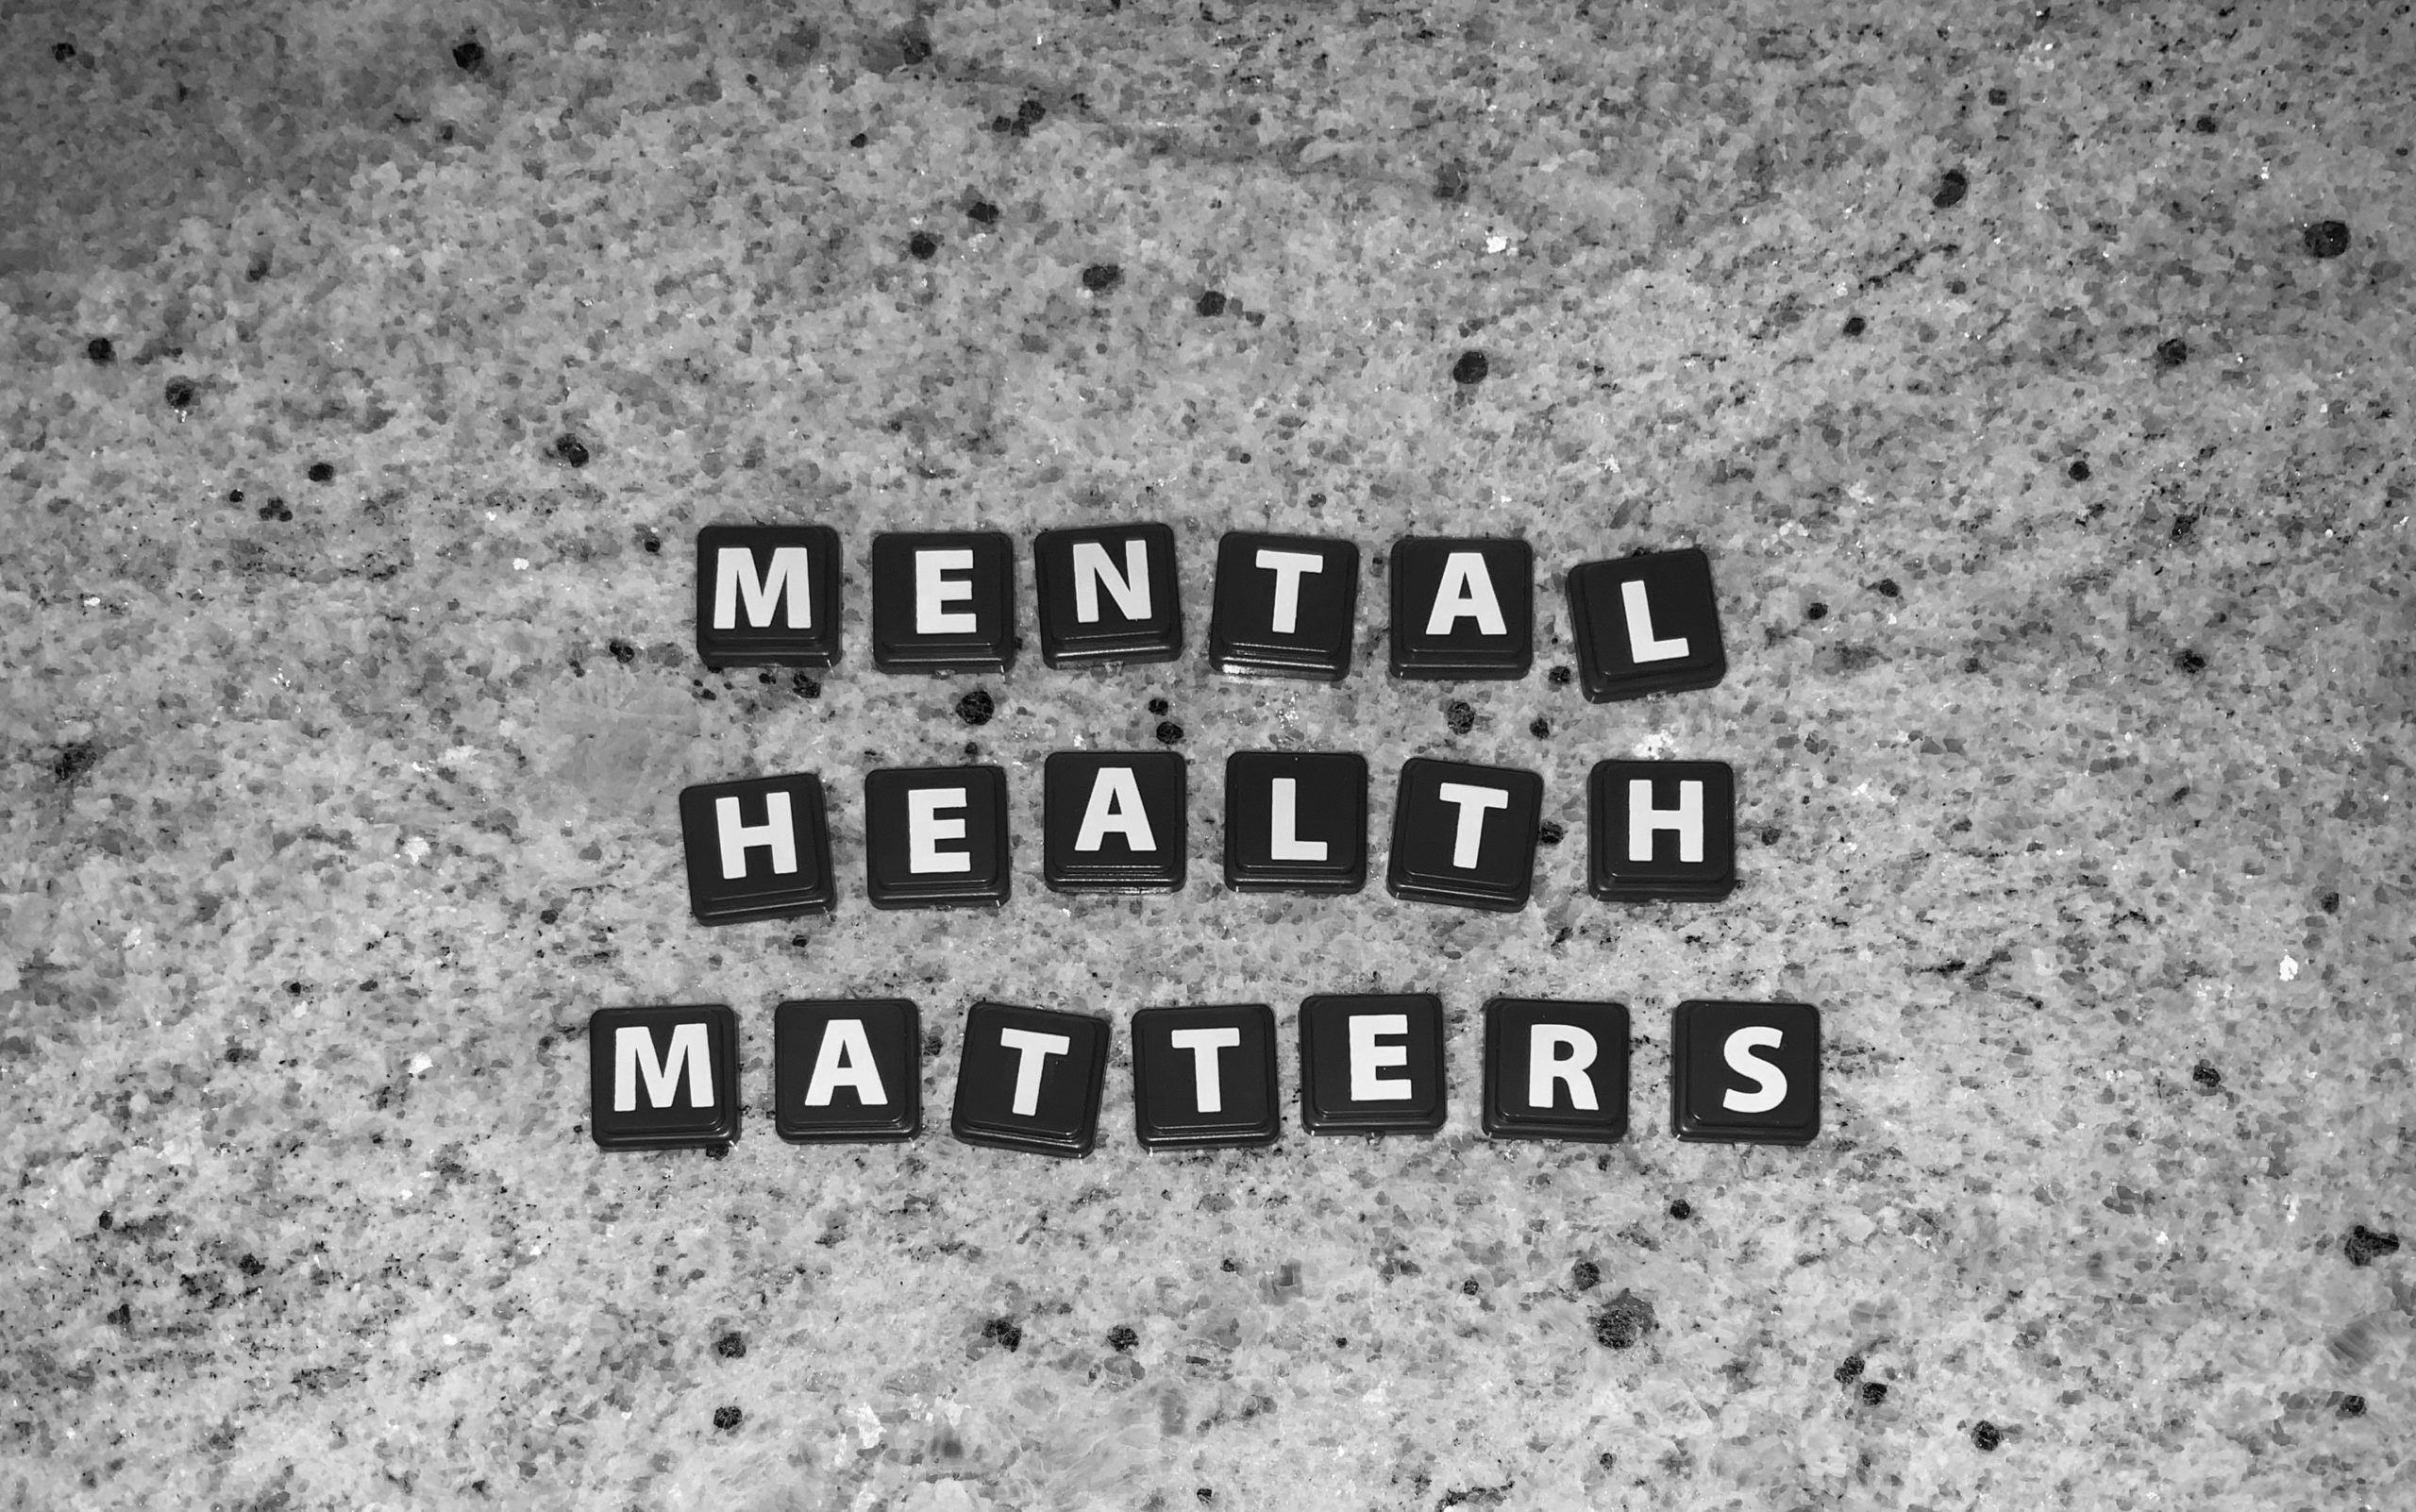 Buchstabensteine auf einer Granitplatte, die den Satz "Mental health matters" bilden